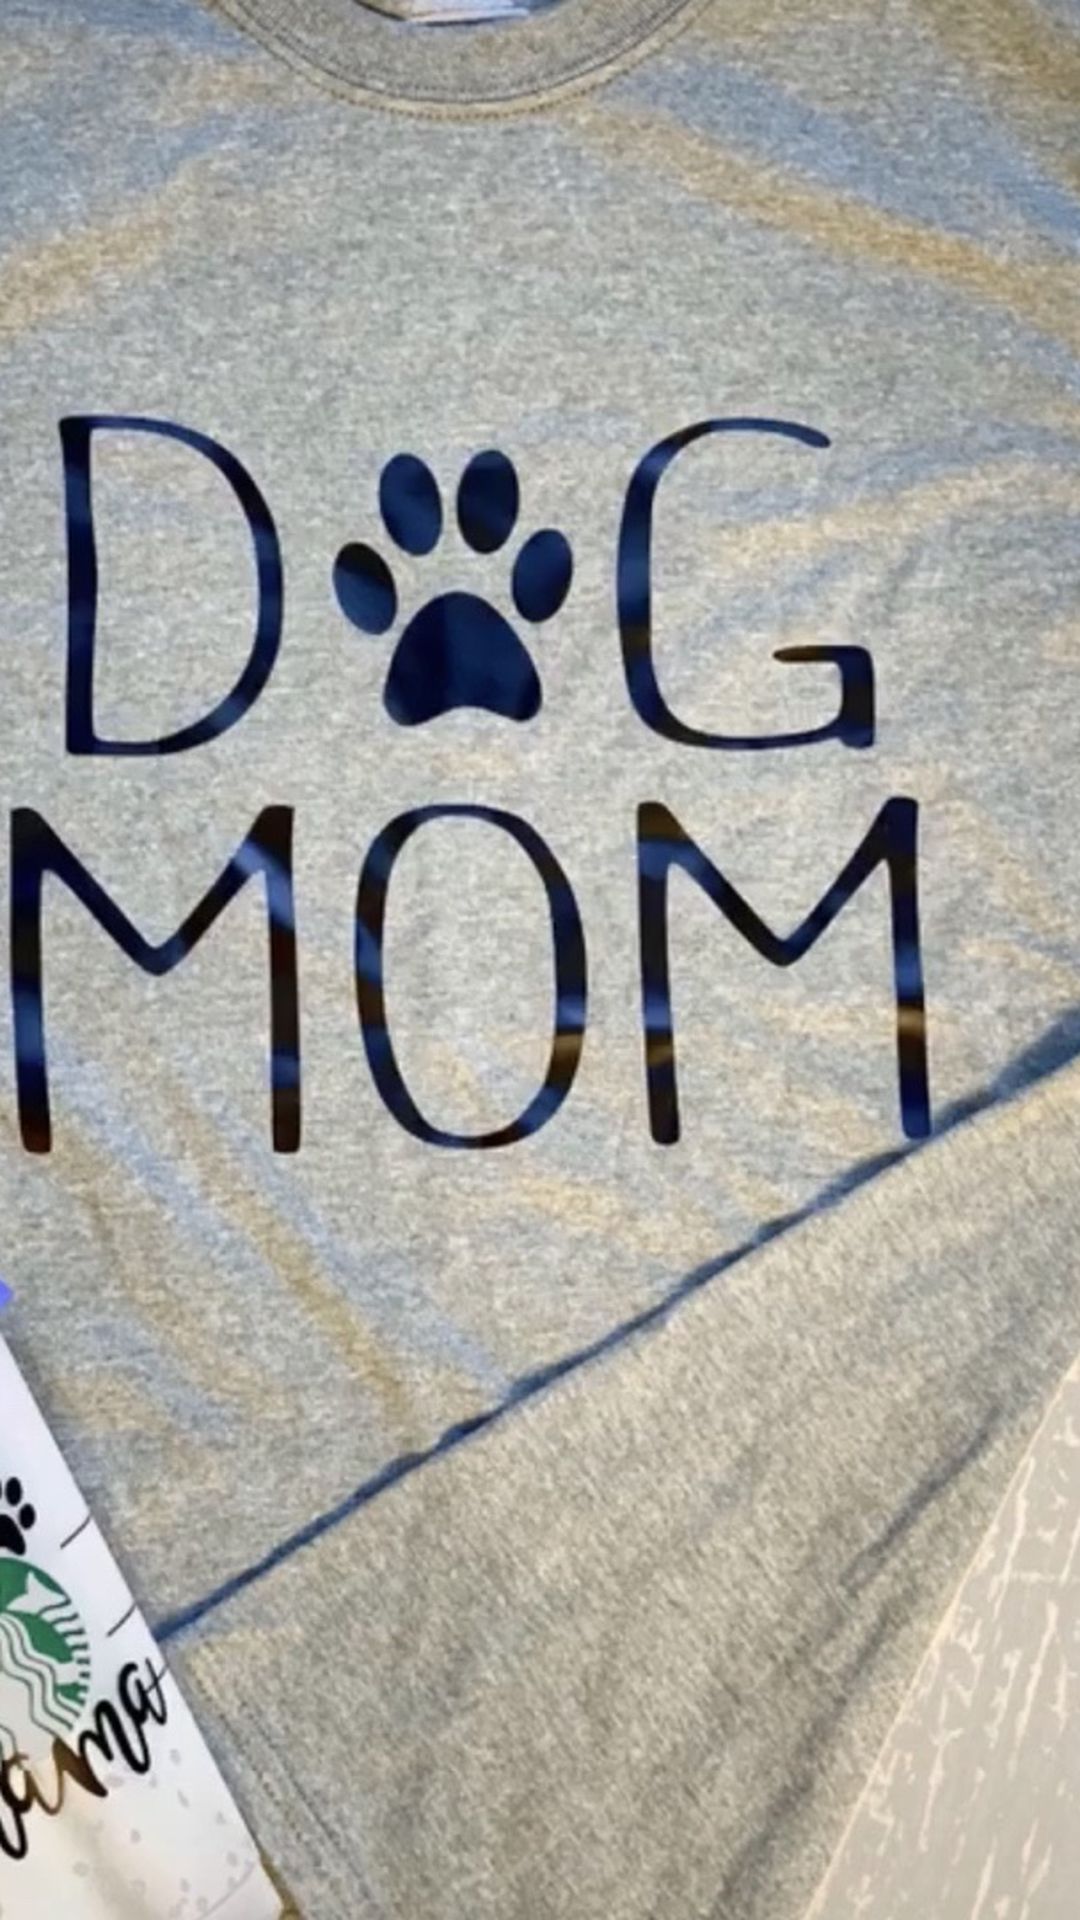 Dog Mom Shirt Or Starbucks Cup